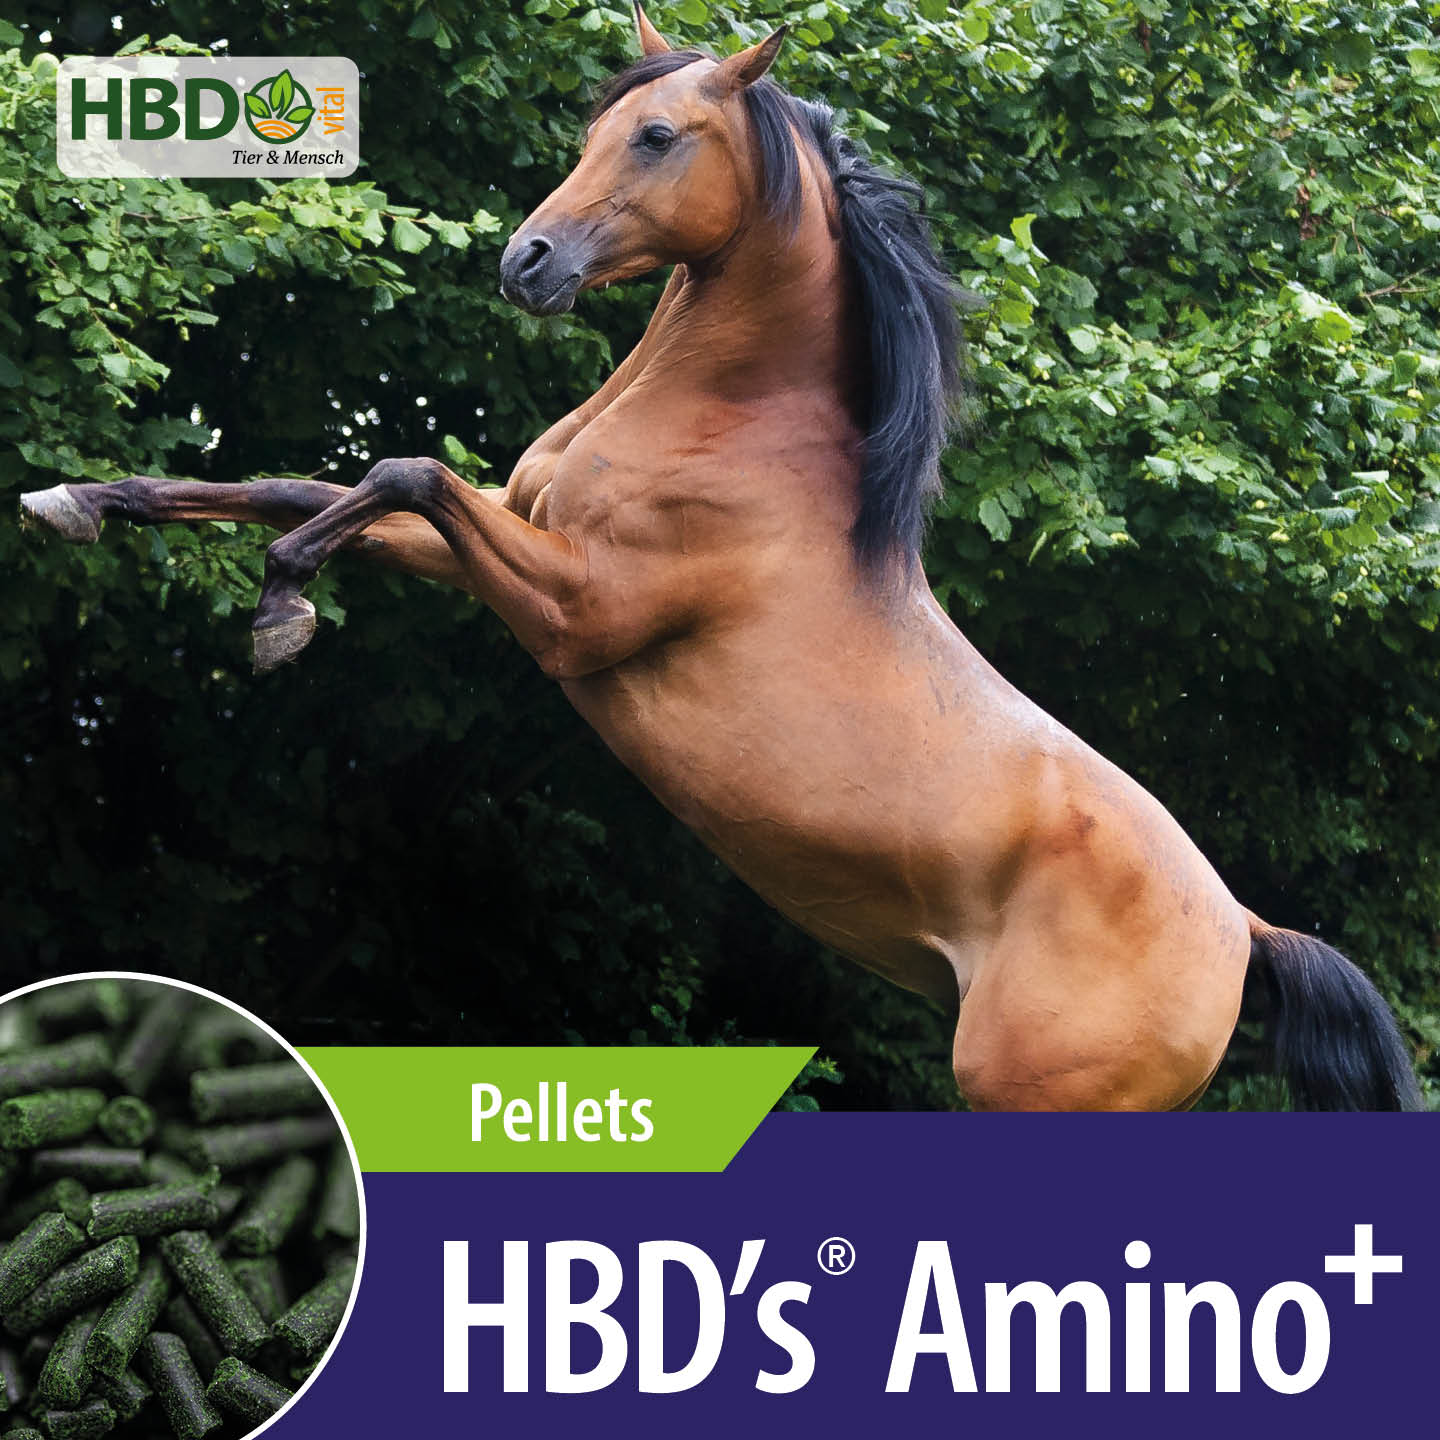 HBD’s Amino+ Pellets für Pferde - Bild zeigt deutlich den Produktnamen und die Information, dass es sich um Pellets handelt, sowie ein steigendes braunes Pferd.